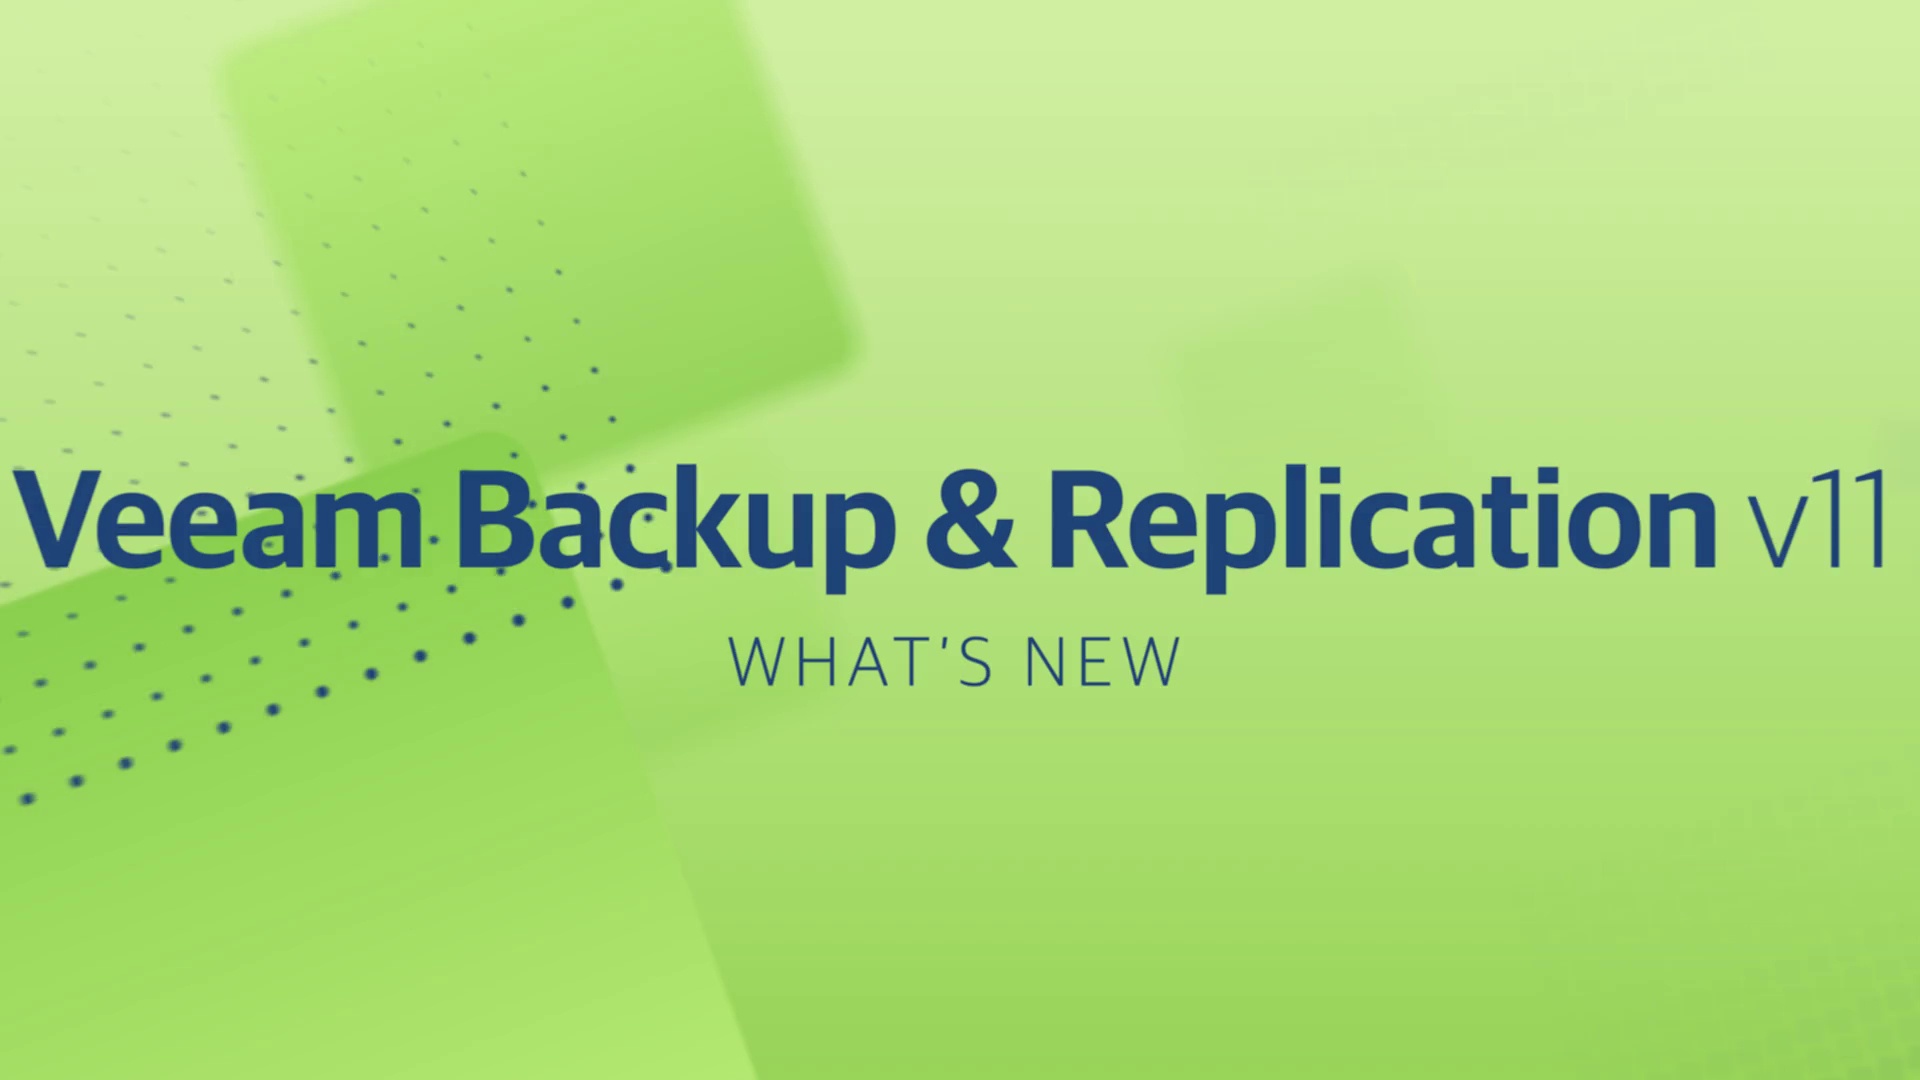 Neue Features und Funktionalitäten in Veeam Backup & Replication v20